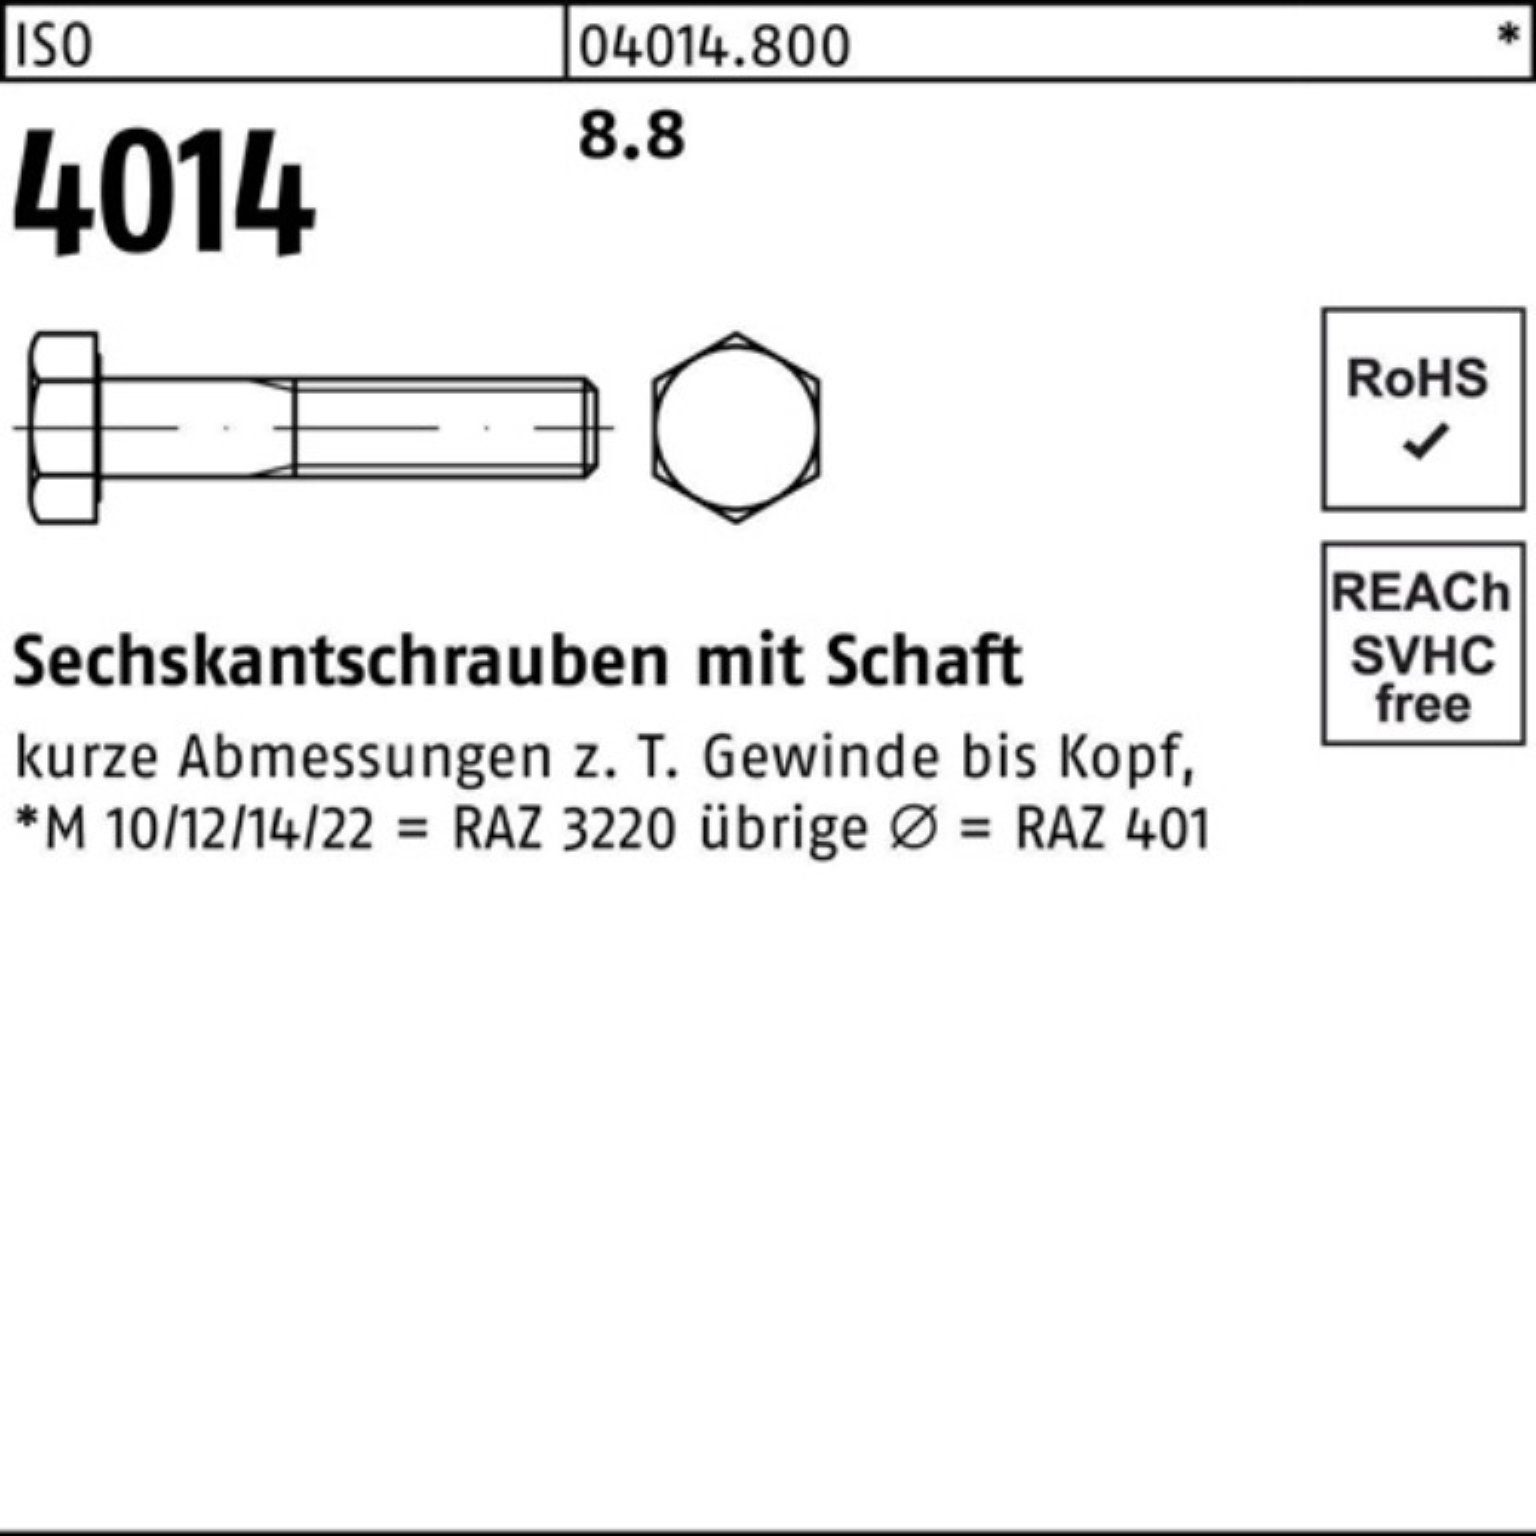 IS Schaft M14x Sechskantschraube 4014 8.8 Stück Bufab 100er Pack 25 Sechskantschraube ISO 160